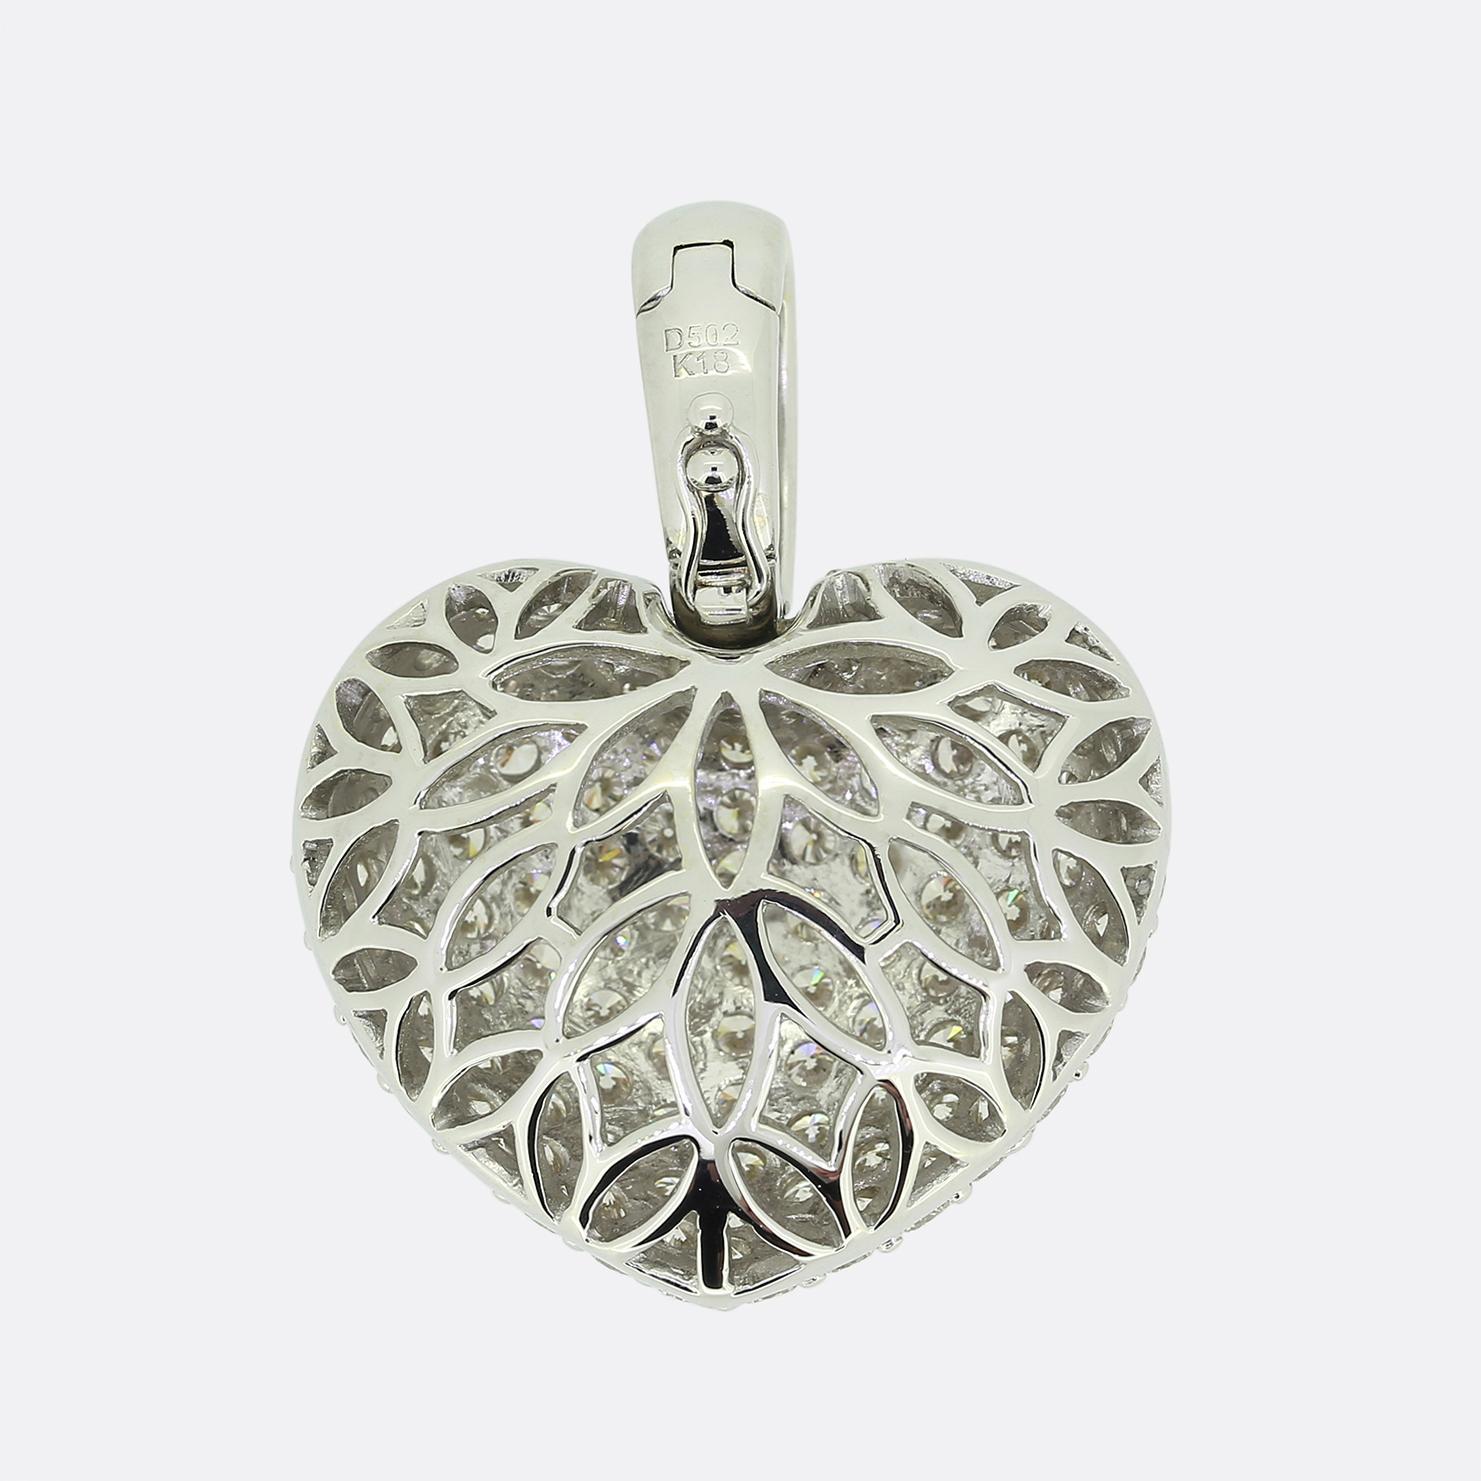 Il s'agit d'un magnifique pendentif contemporain en forme de cœur en diamant. Le cœur est serti de 5,02 carats de diamants ronds de taille brillant et est réalisé en or blanc 18ct avec un fond ajouré. 

Condit : Utilisé (Excellent)
Poids : 13.6